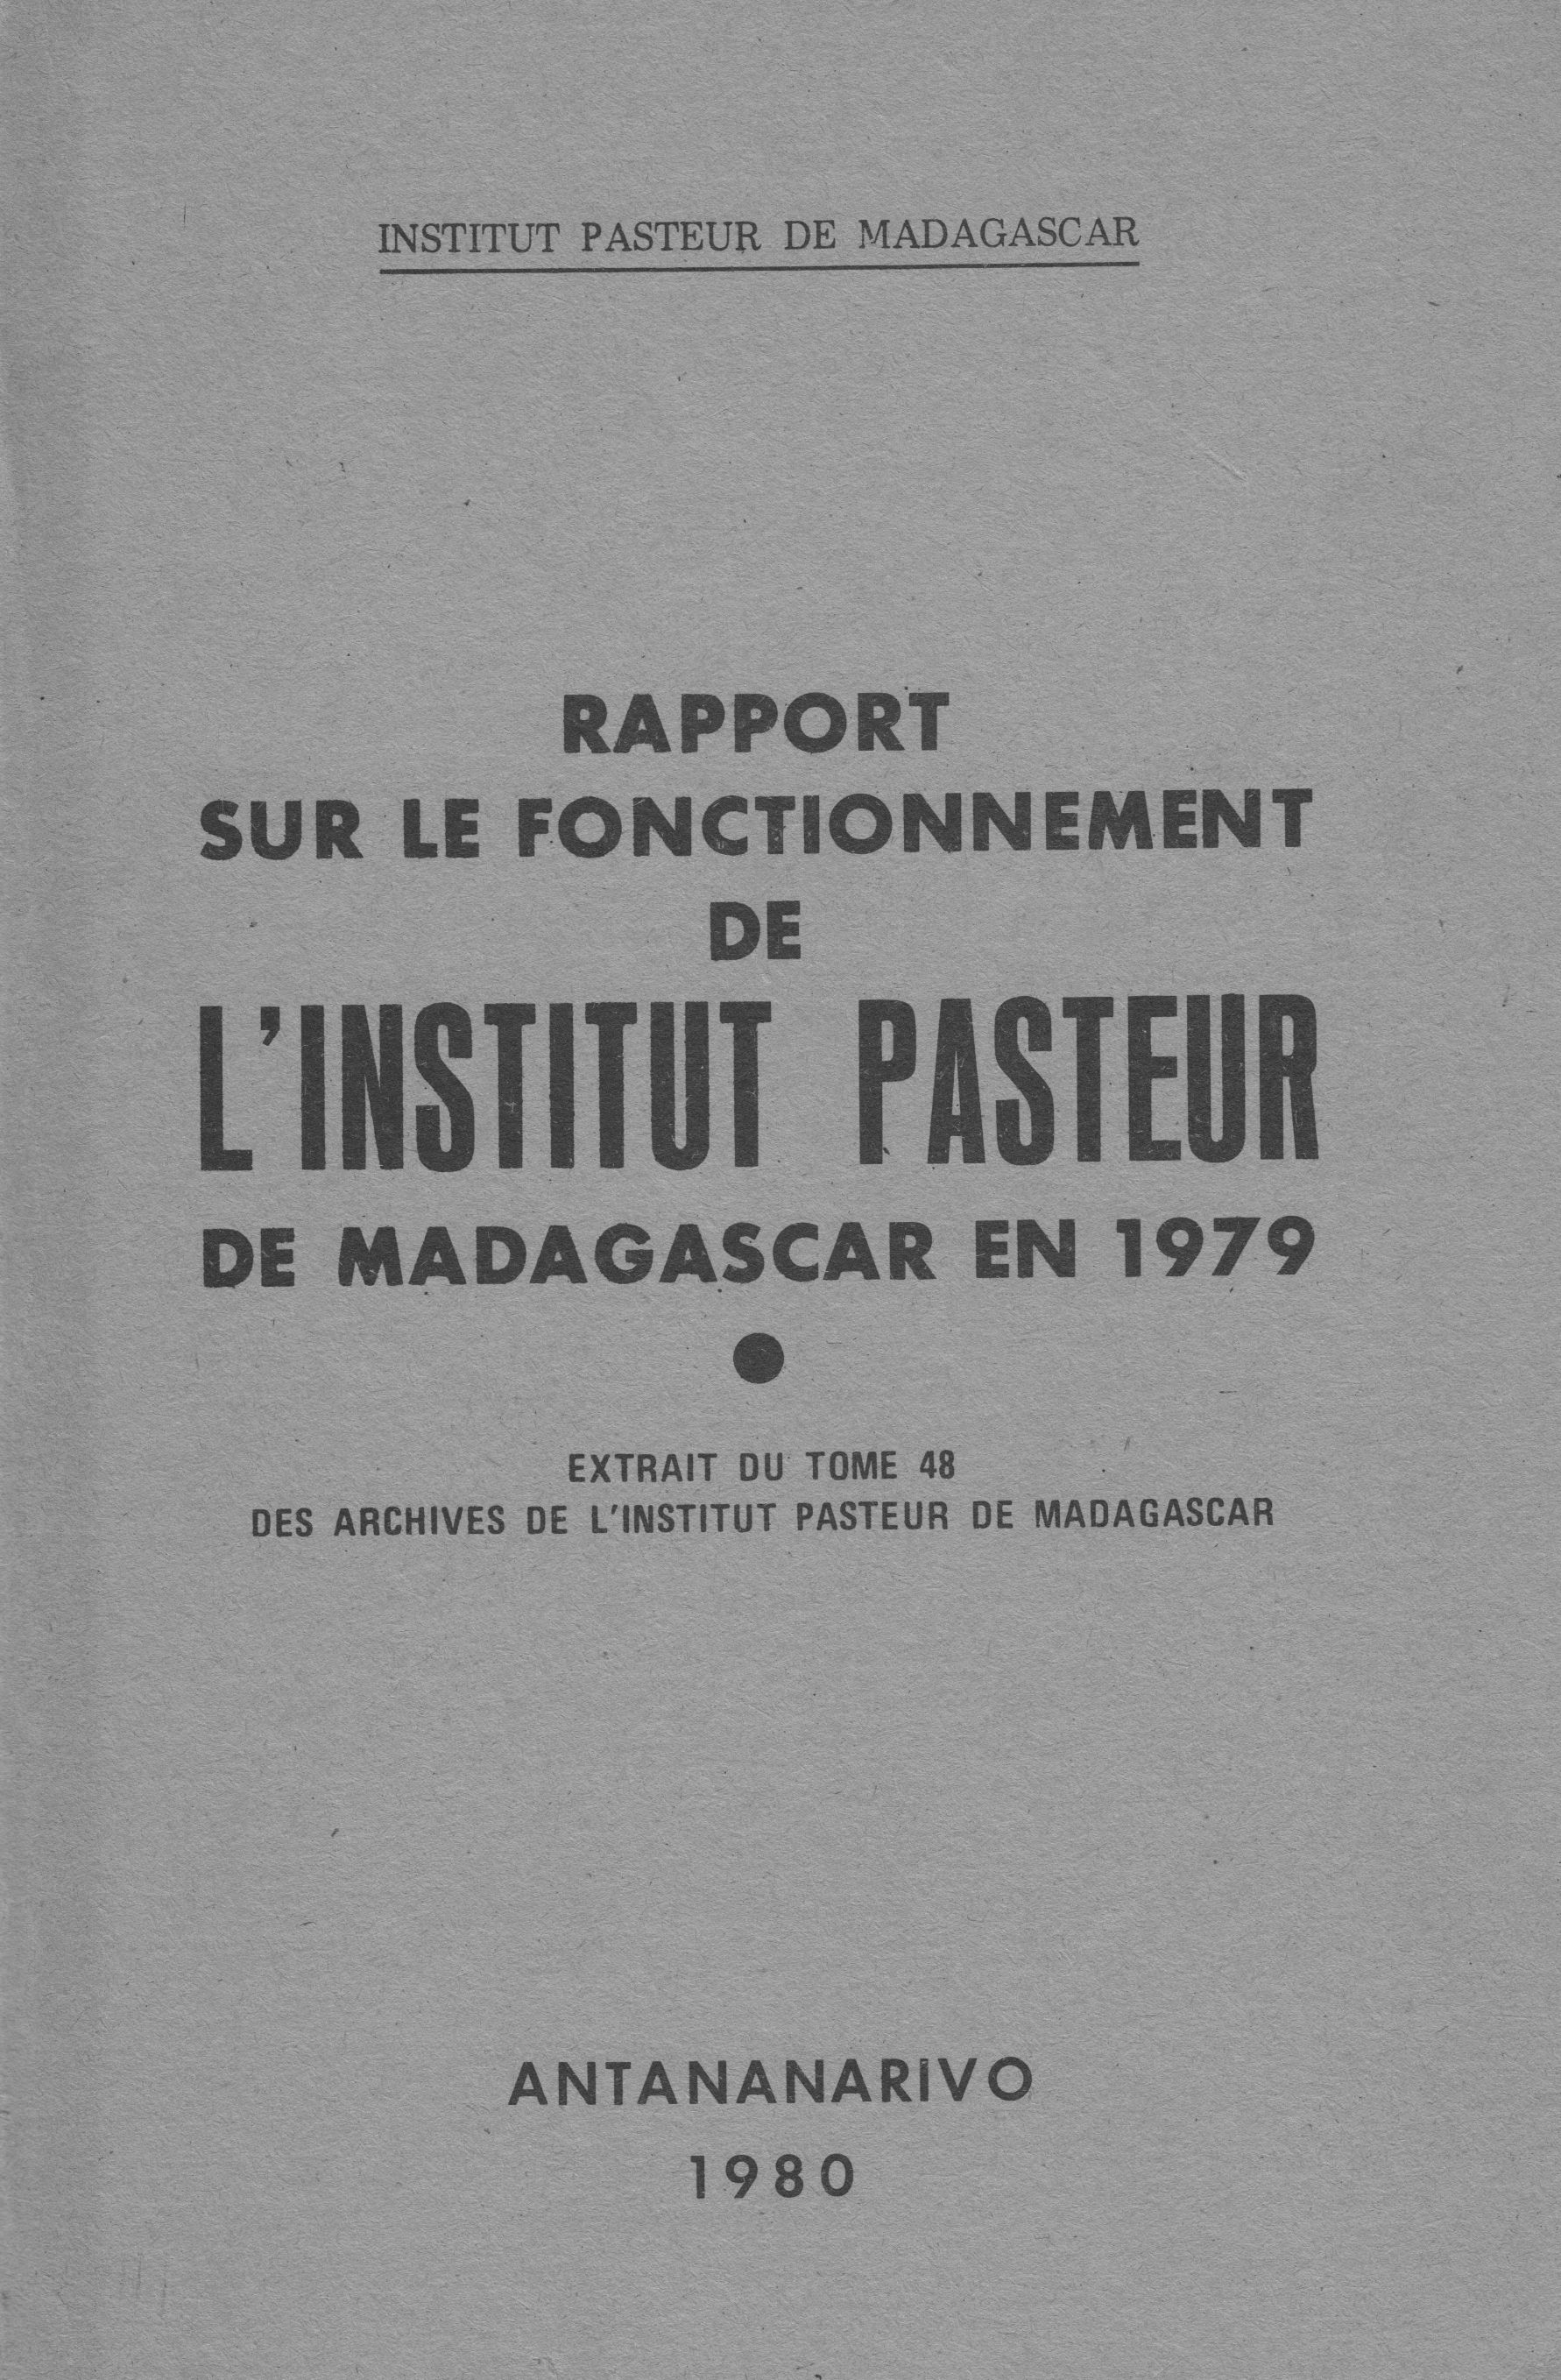 Rapport sur le fonctionnement de l'Institut Pasteur de Madagascar en 1979 couverture.jpg